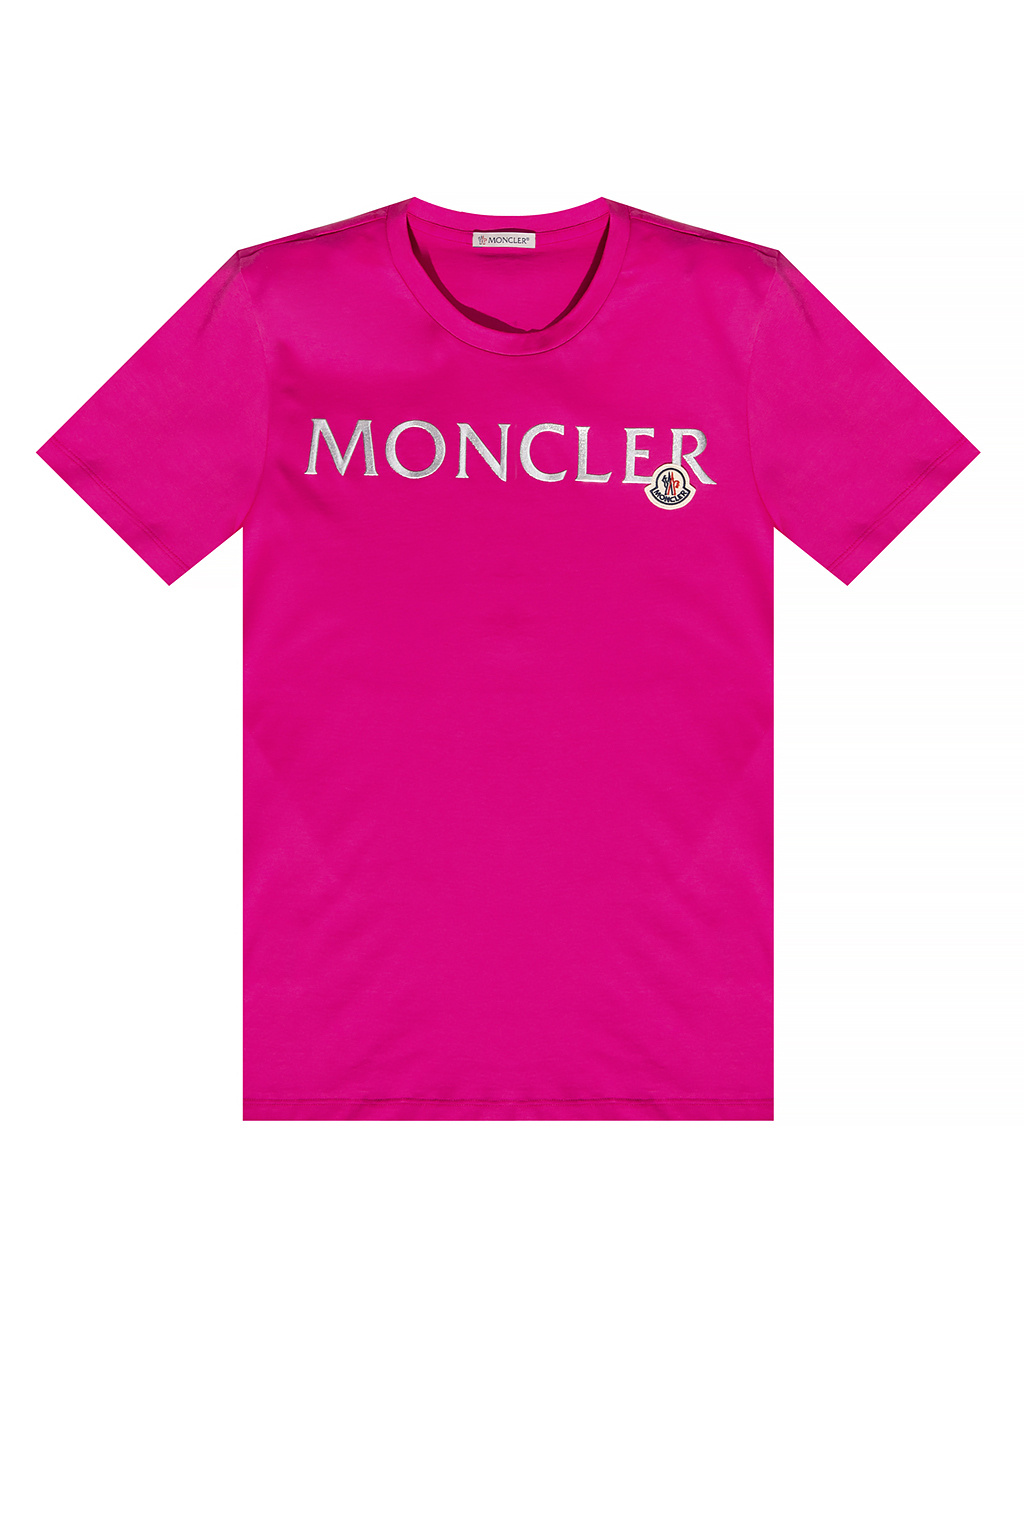 Moncler Logo T-shirt | Women's Clothing | IetpShops